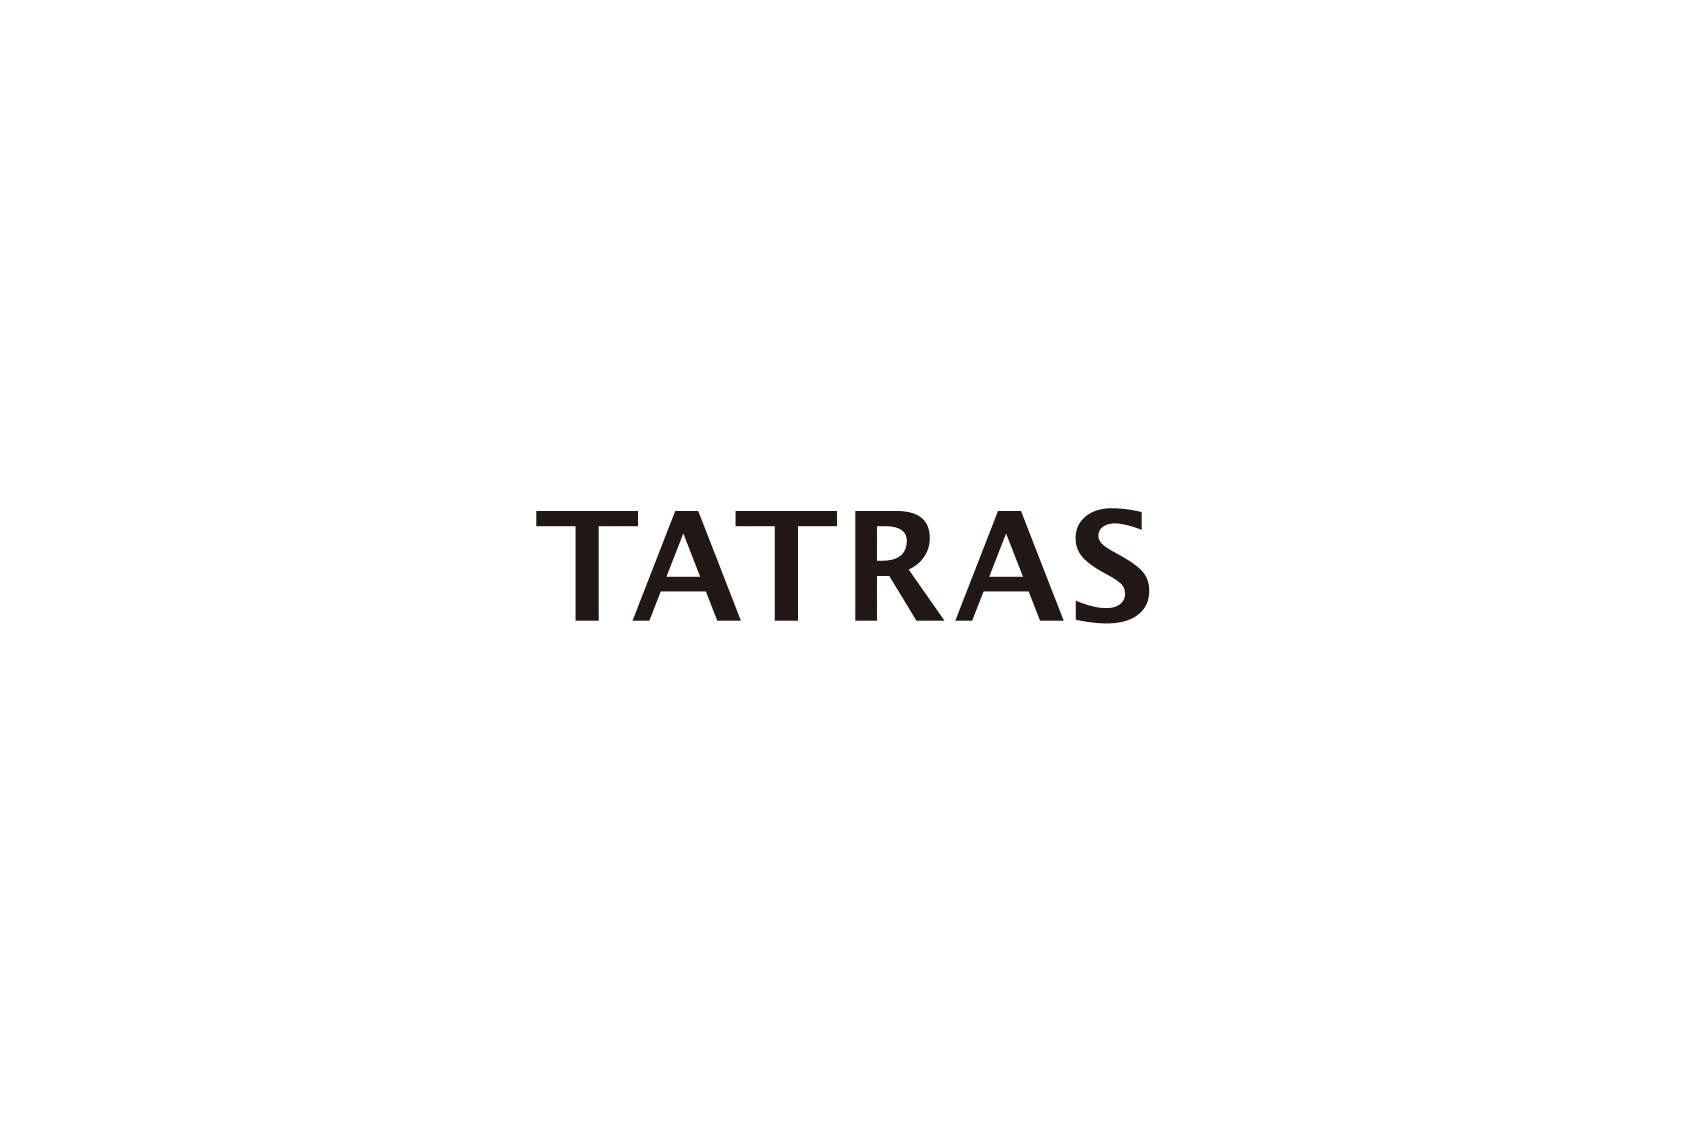 《TATRAS/タトラス》がリラックスを表現したムードが目を引く【TATRAS RESORT COLLECTION】を発表致します。